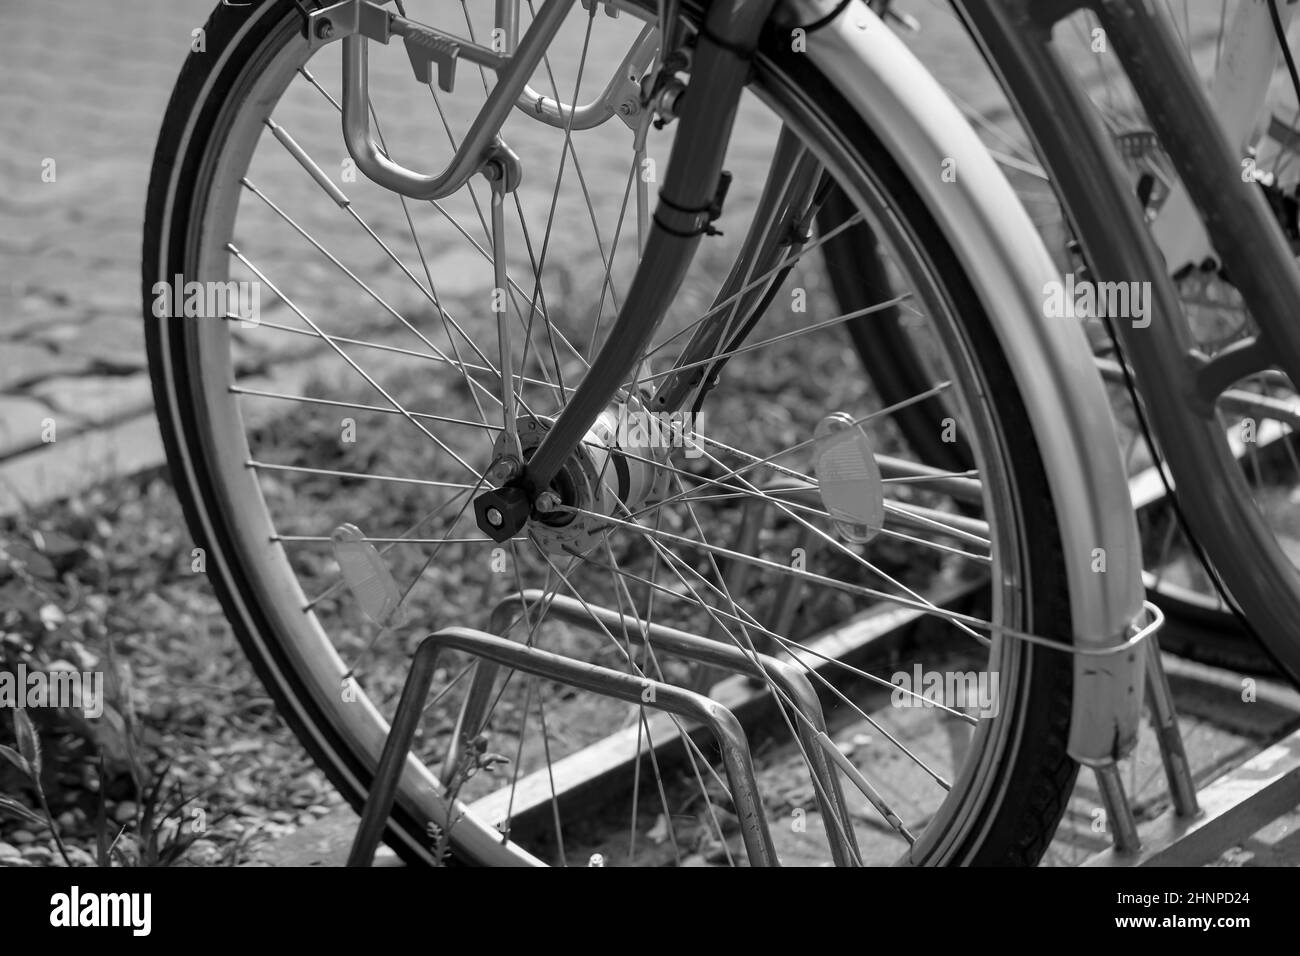 Dettagli di una bicicletta. Parte anteriore della bicicletta. Foto Stock